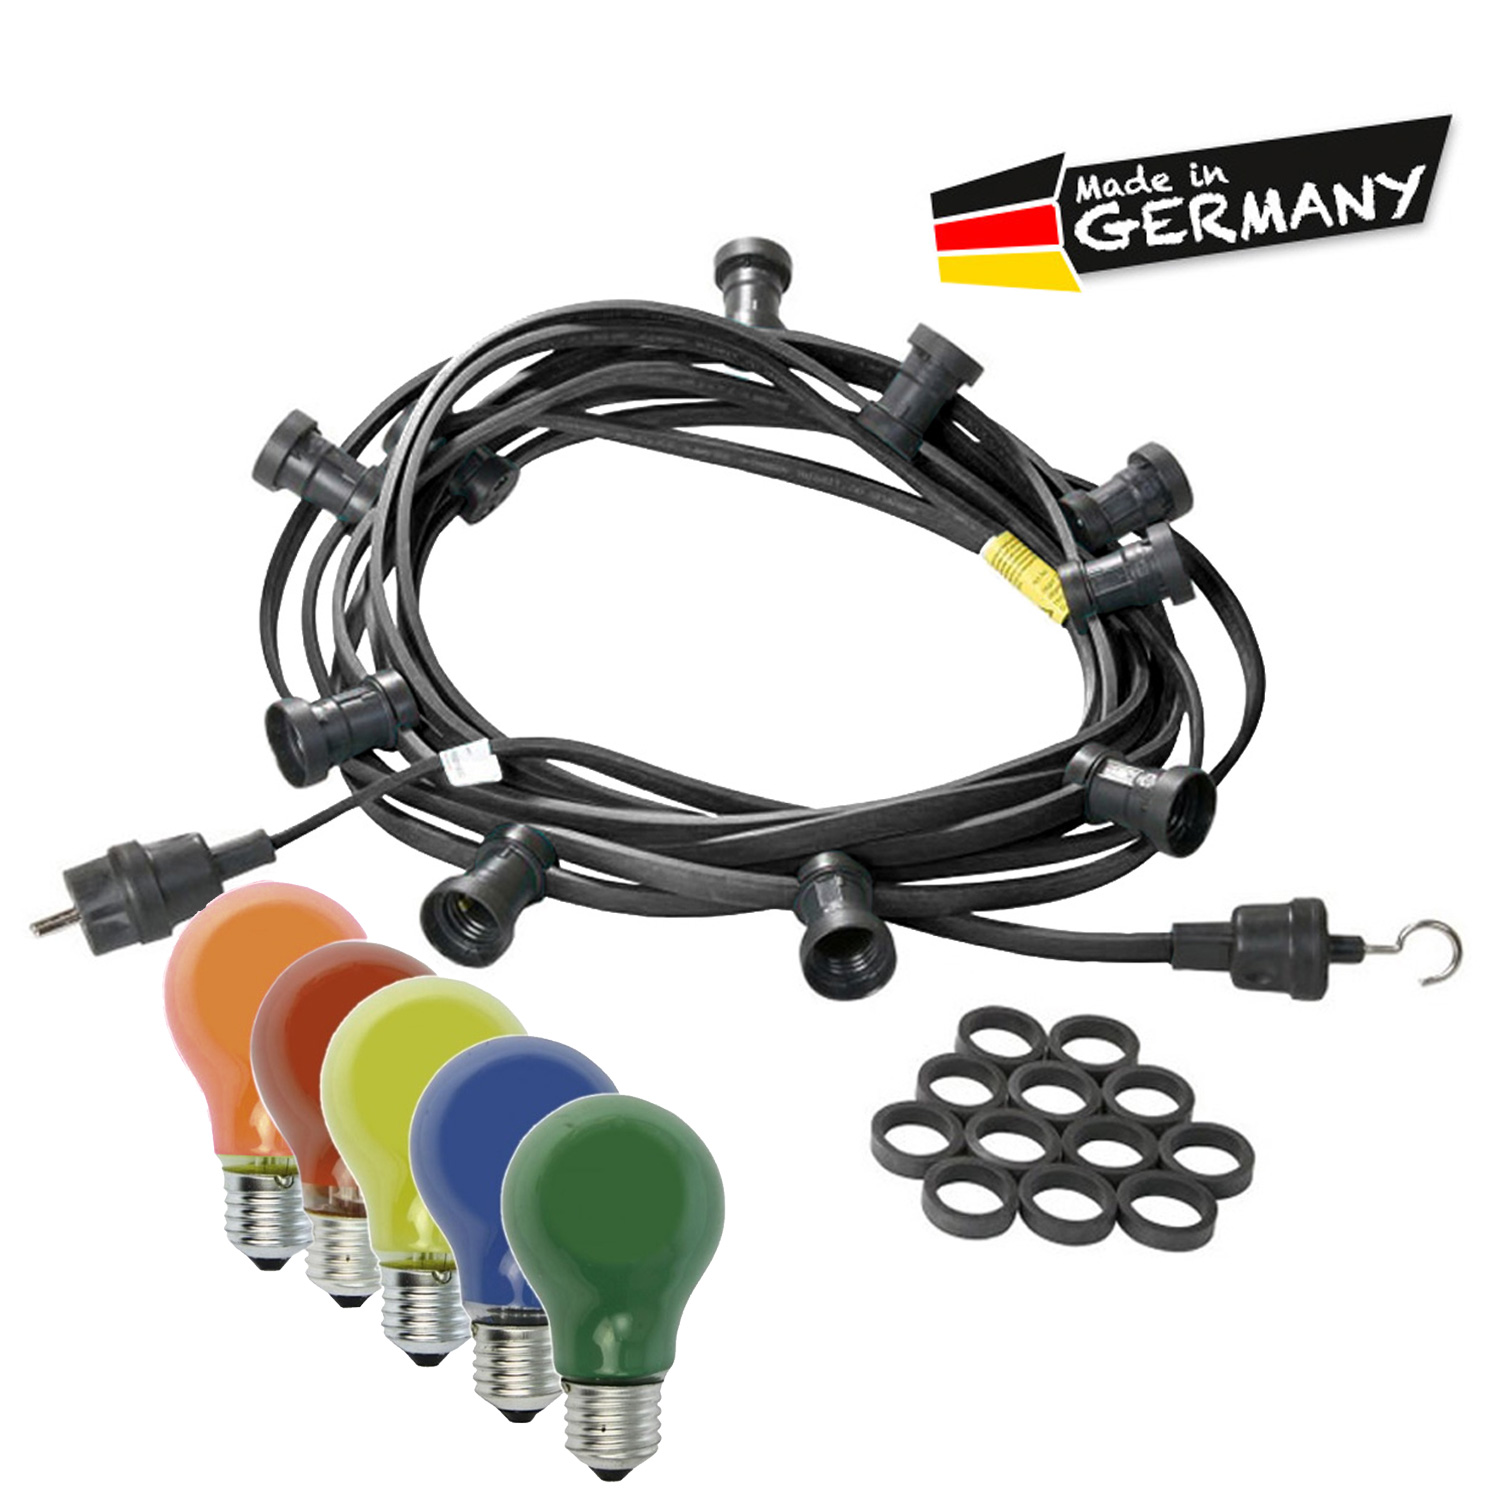 Illu-/Partylichterkette 20m - Außenlichterkette schwarz - Made in Germany - 40 bunte 25W Glühlampen